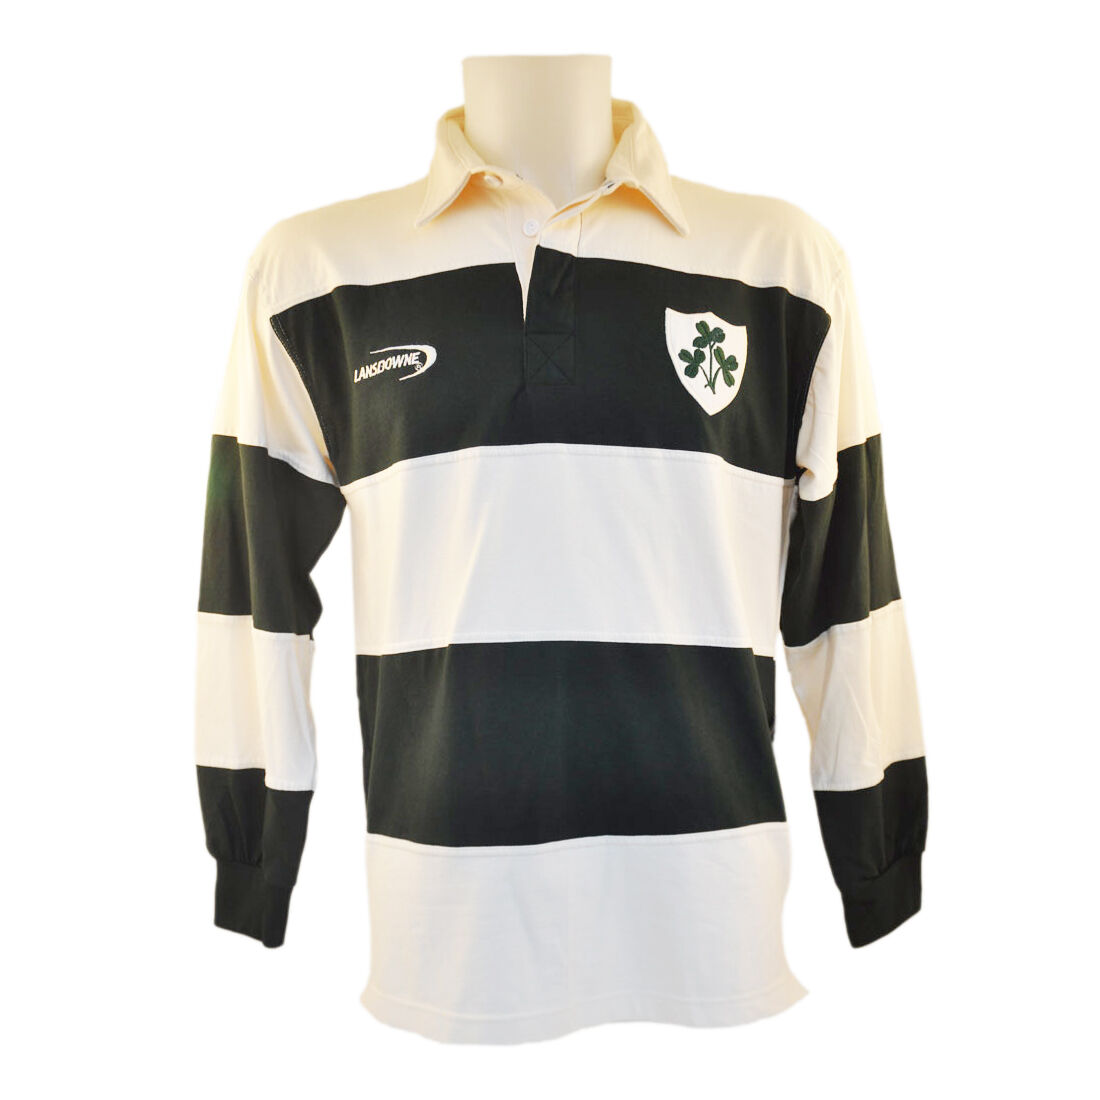 irish rugby shirt mens